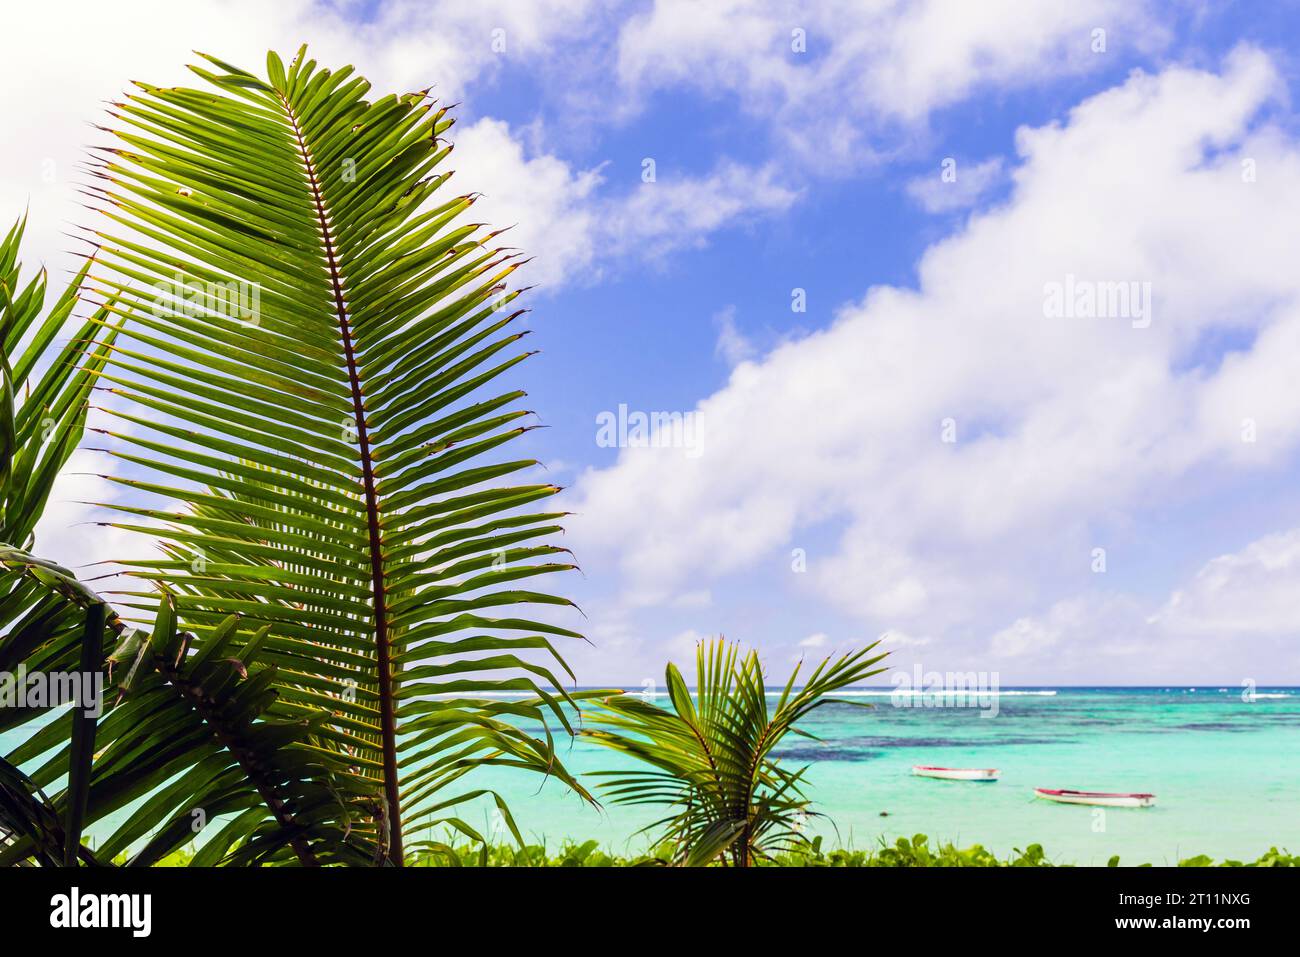 Paysage côtier avec des feuilles de palmier sous un ciel nuageux par une journée ensoleillée. Île de Mahé, Seychelles Banque D'Images